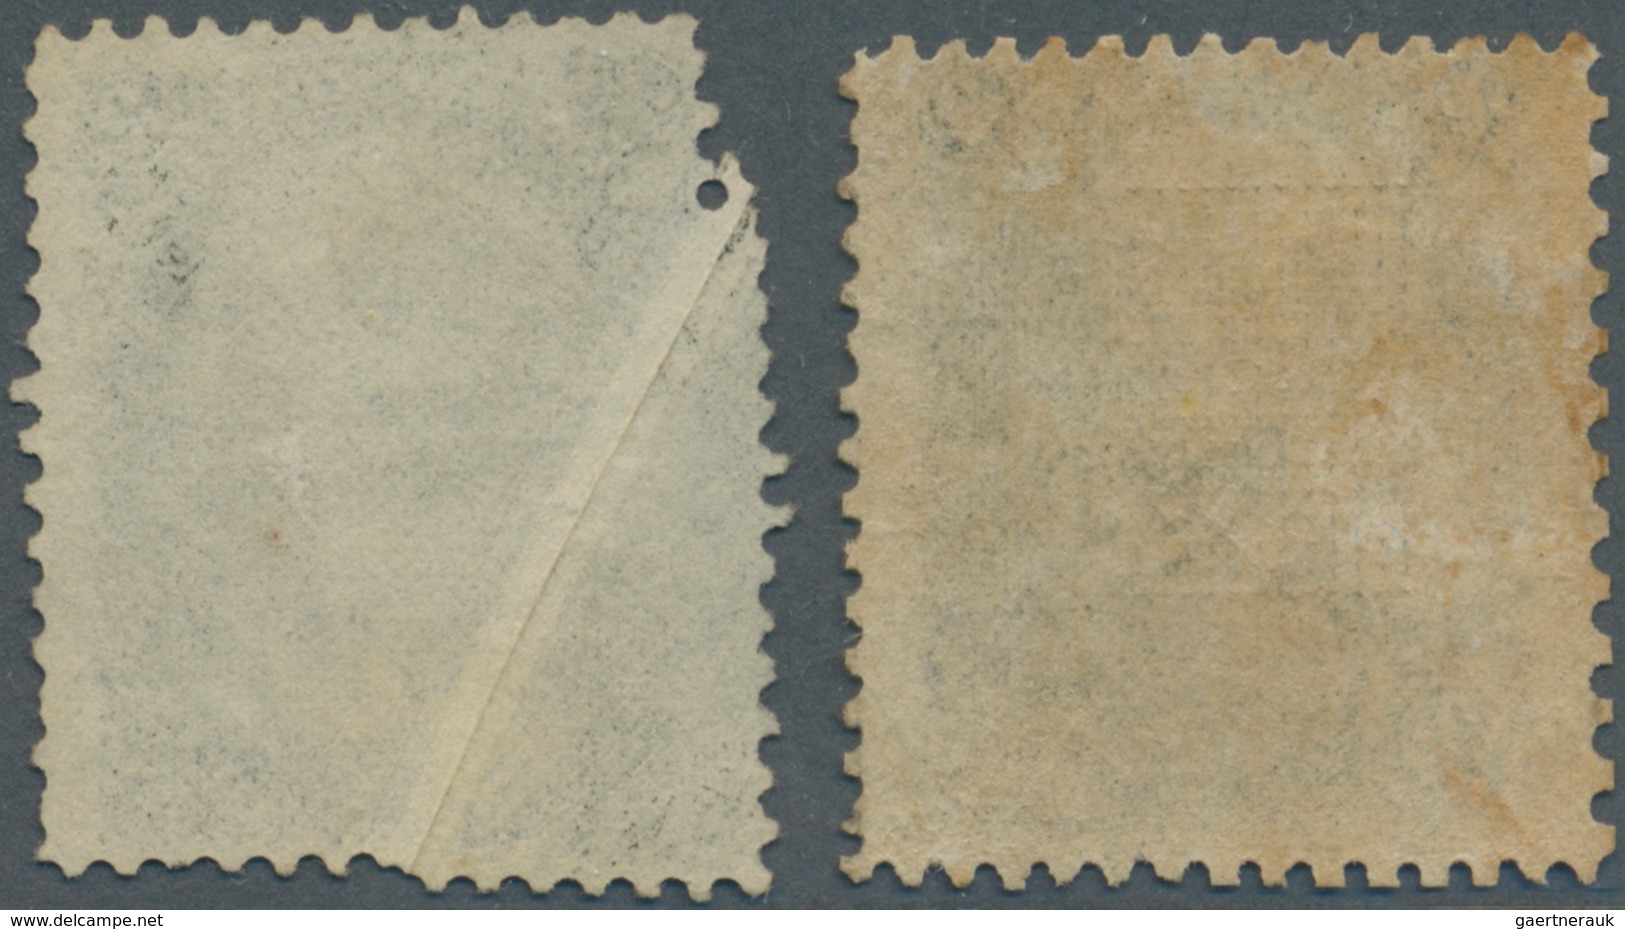 Vereinigte Staaten Von Amerika: 1863/1867, Jackson 2c. Black, Mint Copy With Grill And Original Gum - Lettres & Documents